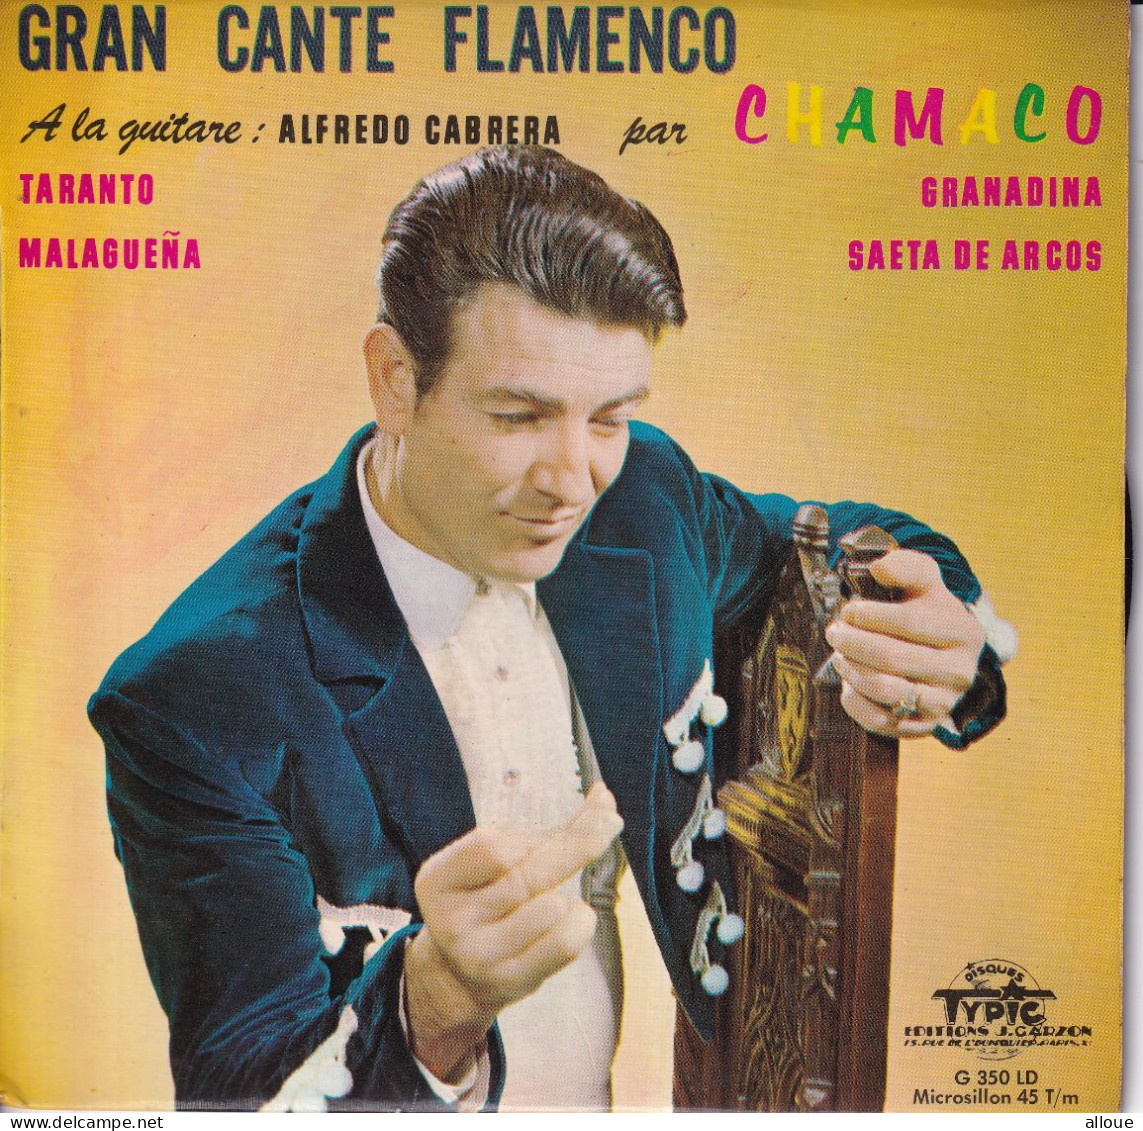 CHAMACO (A LA GUITARE : ALFREDO CABRERA) - GRAN CANTE FLAMENCO - FR EP - TARANTO + 3 - Other - Spanish Music